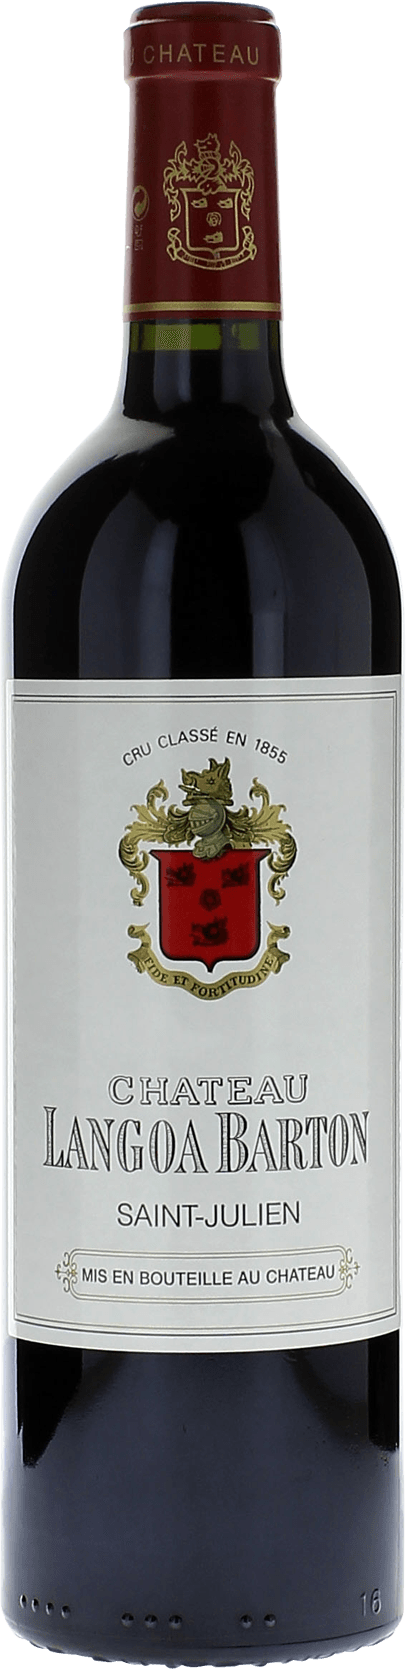 Langoa barton 2017 3me Grand cru class Saint-Julien, Bordeaux rouge